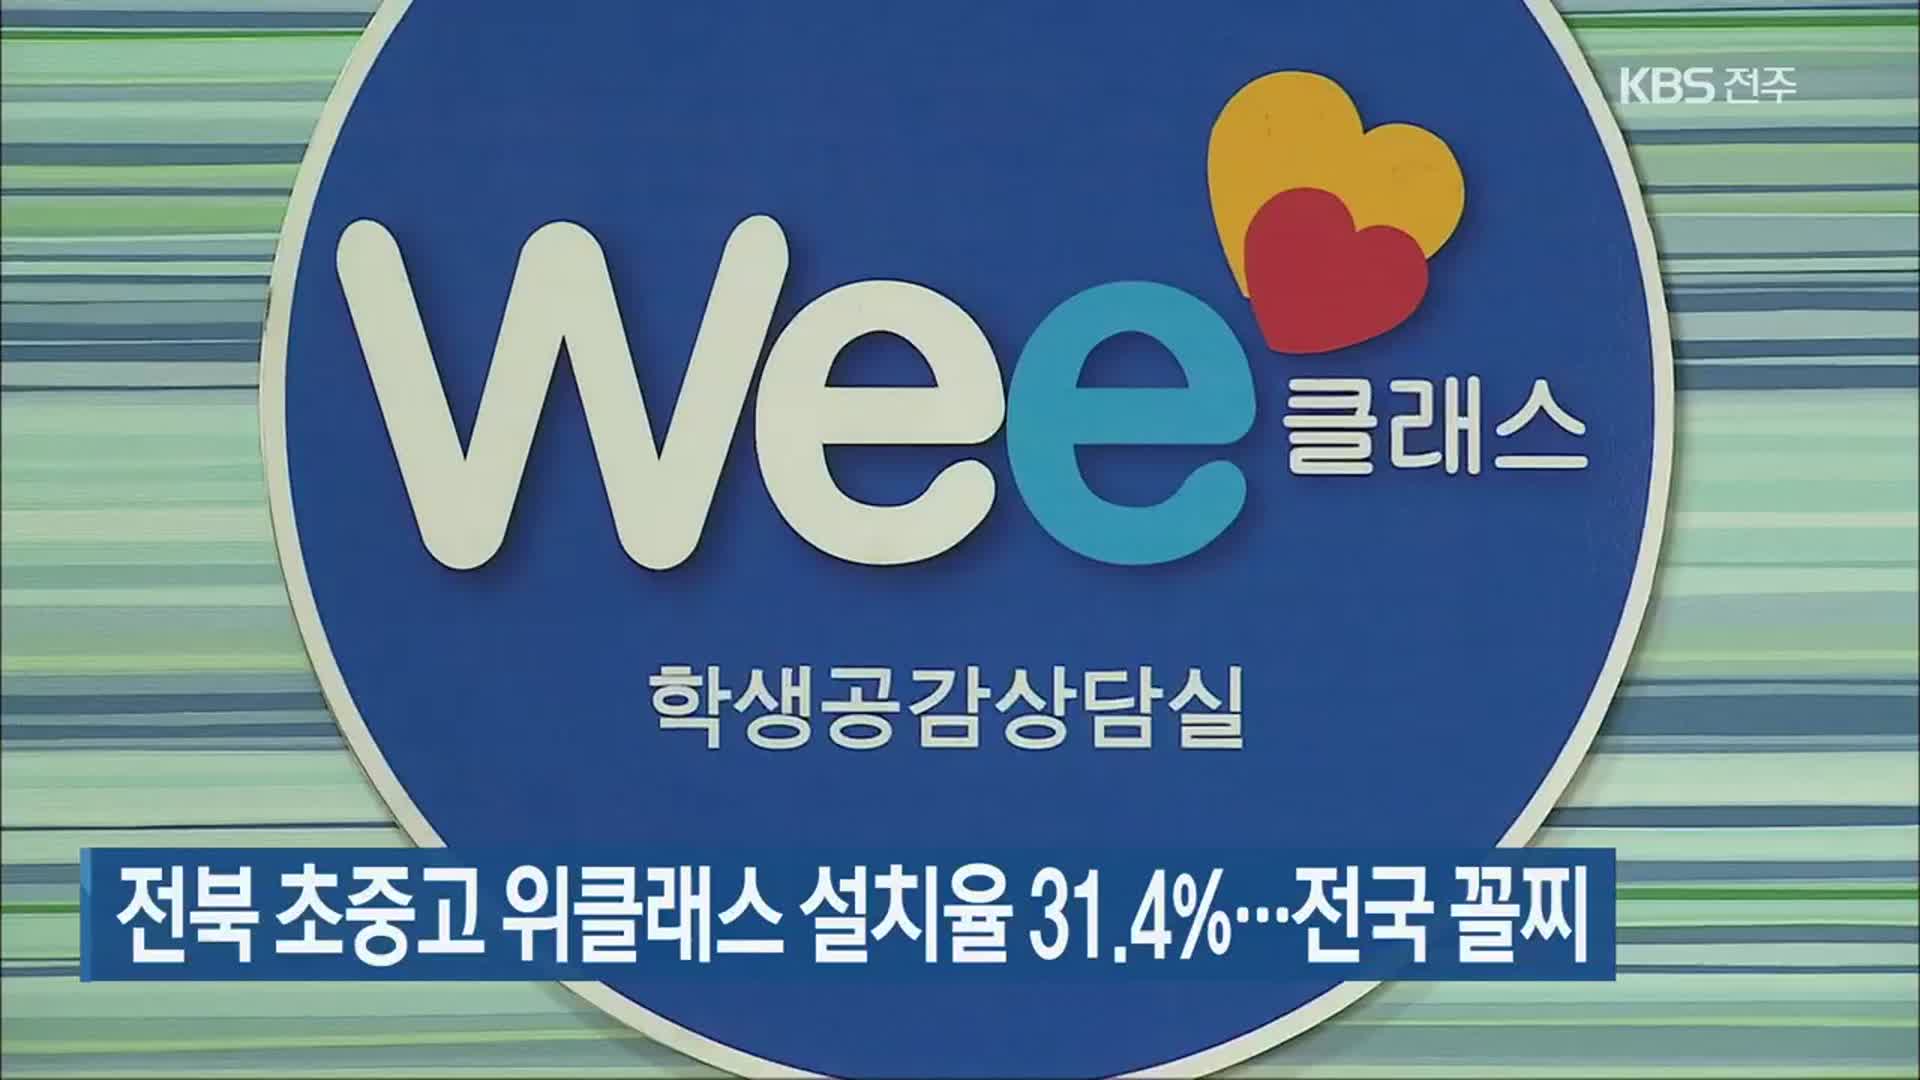 전북 초중고 위클래스 설치율 31.4%…전국 꼴찌